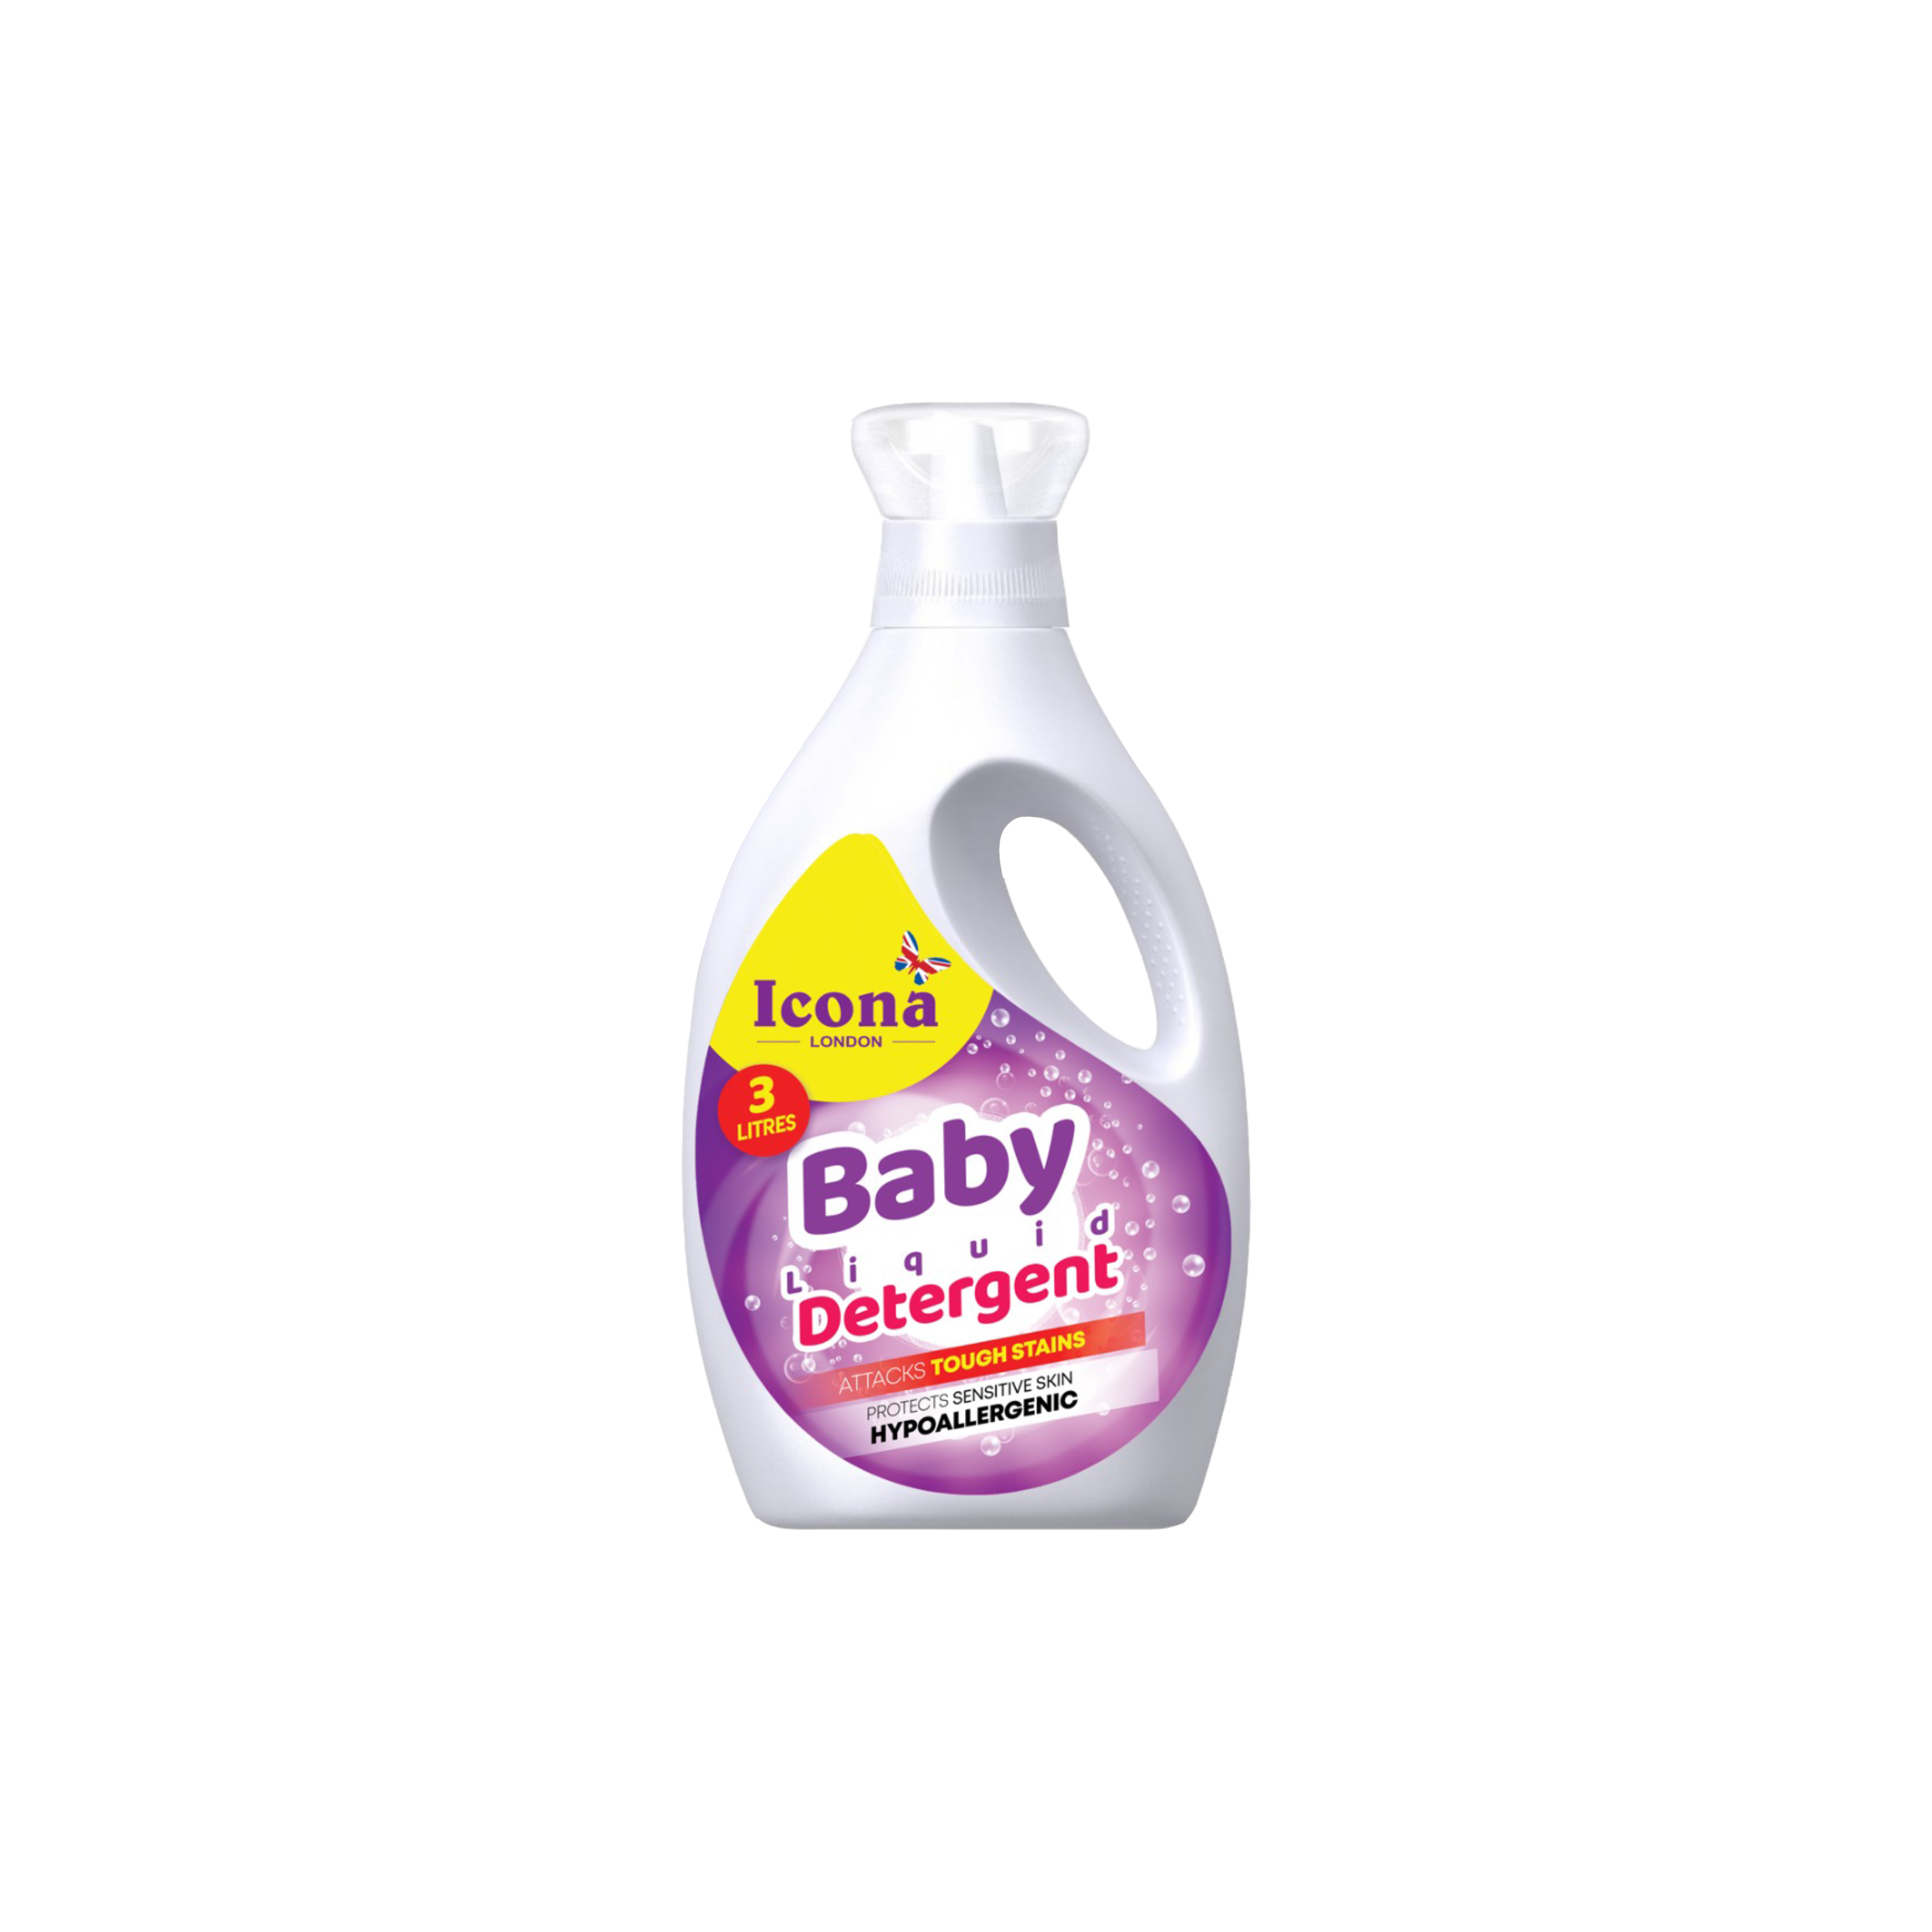 Baby Liquid Detergent (3 Liter)